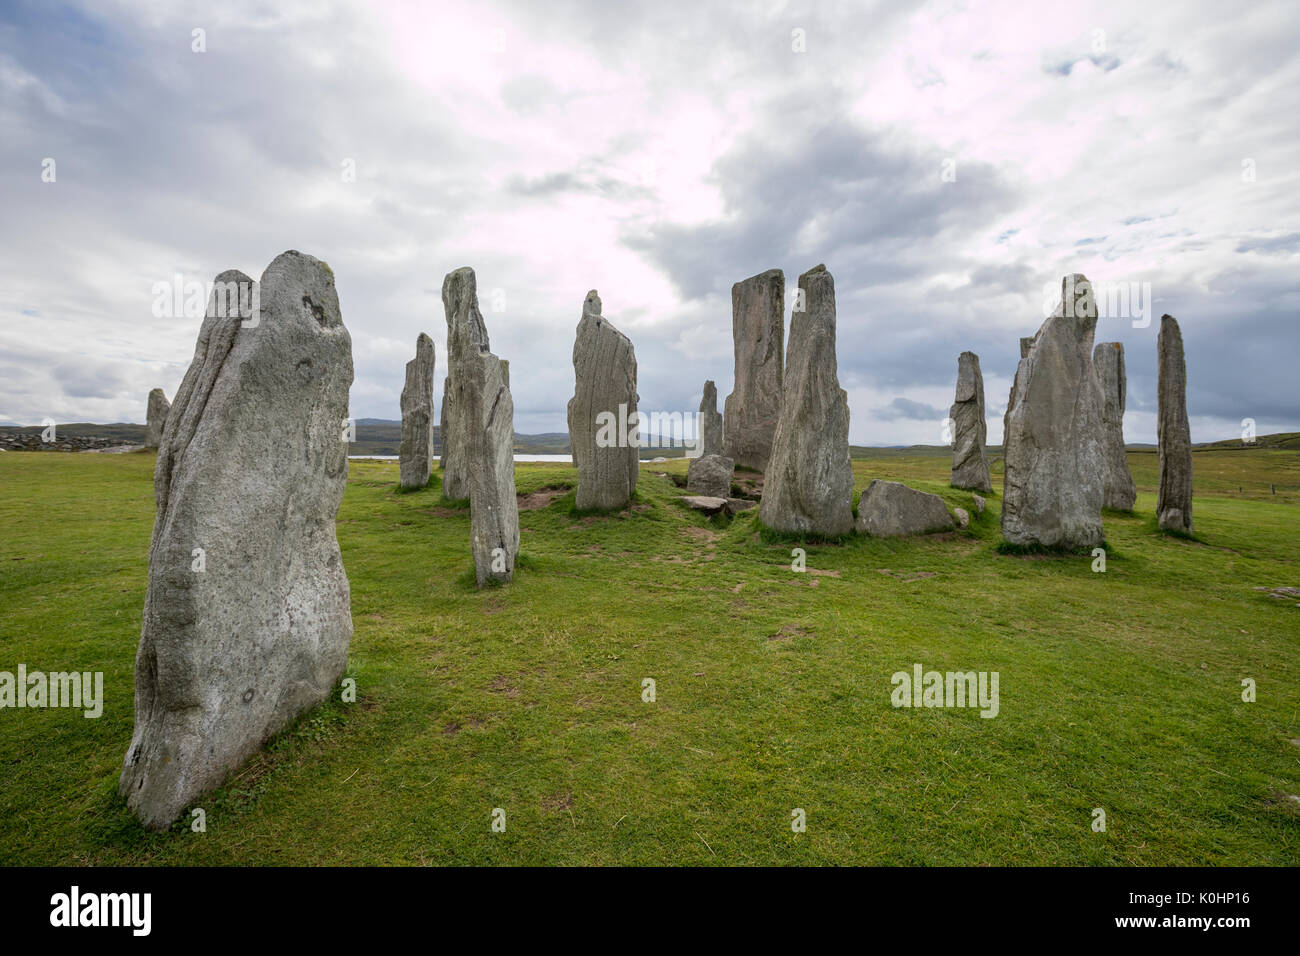 Callanish Standing Stones dans un jour nuageux, , pierres placées dans un motif cruciforme avec un cercle central en pierre, Callanish, Ecosse, Royaume-Uni Banque D'Images